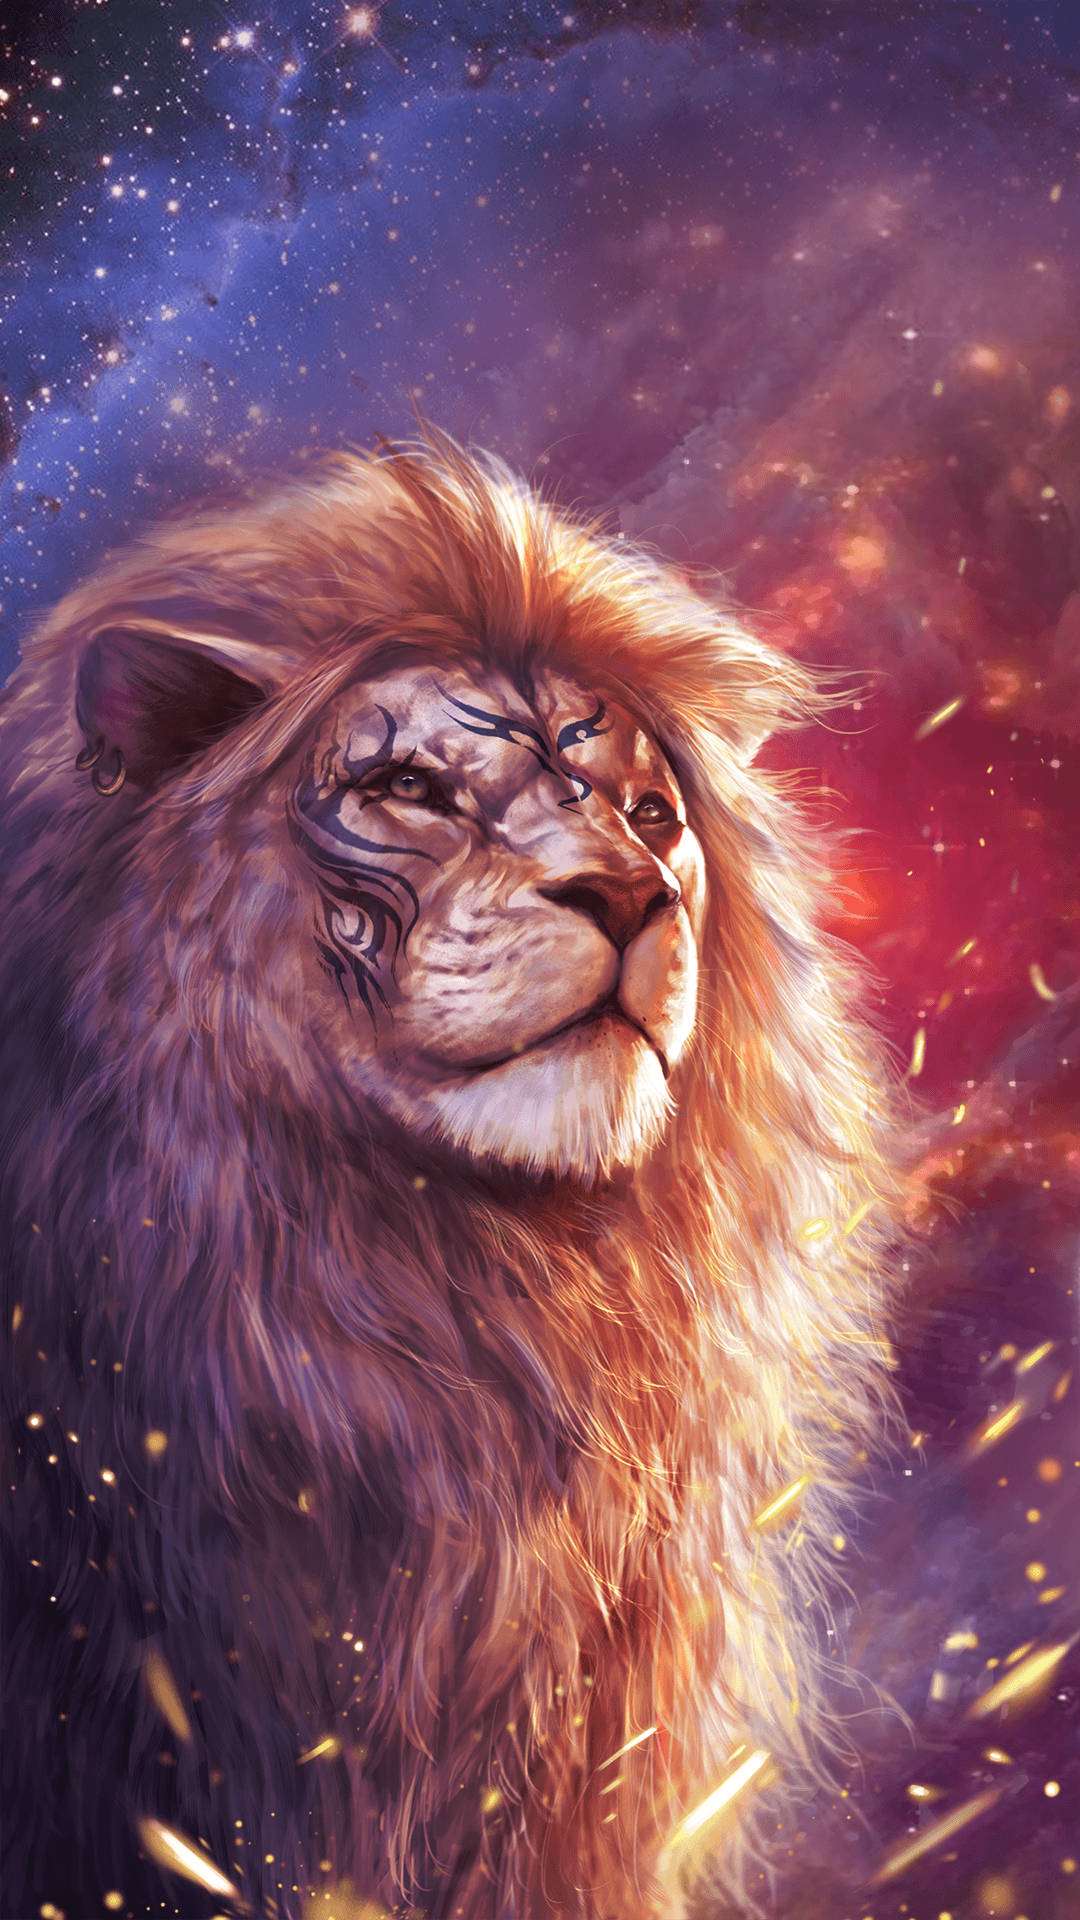 Cool Lion Fierce 2d Art Wallpaper